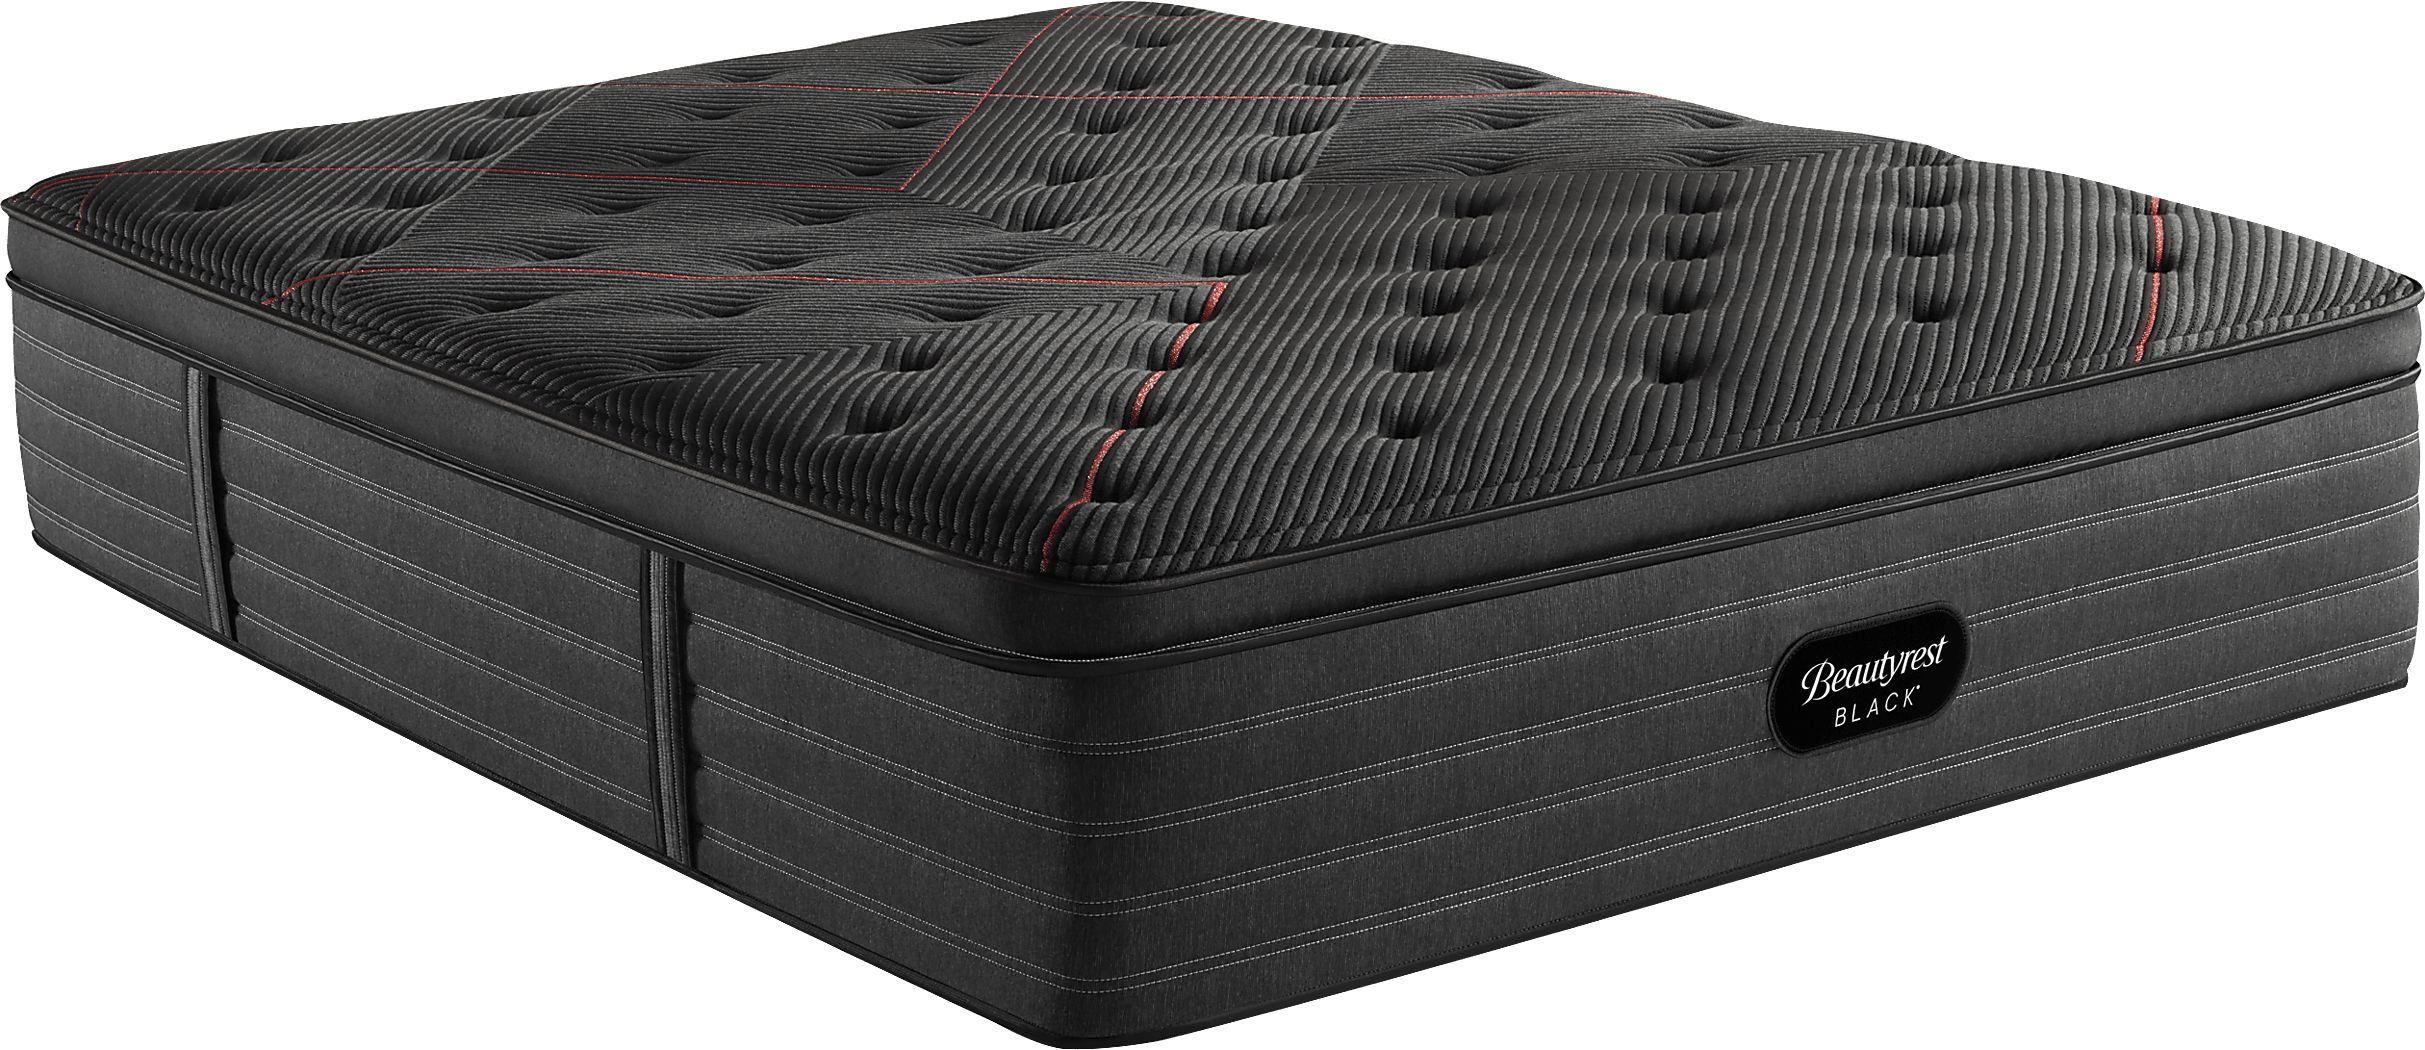 beautyrest black c-class plush pillowtop king mattress